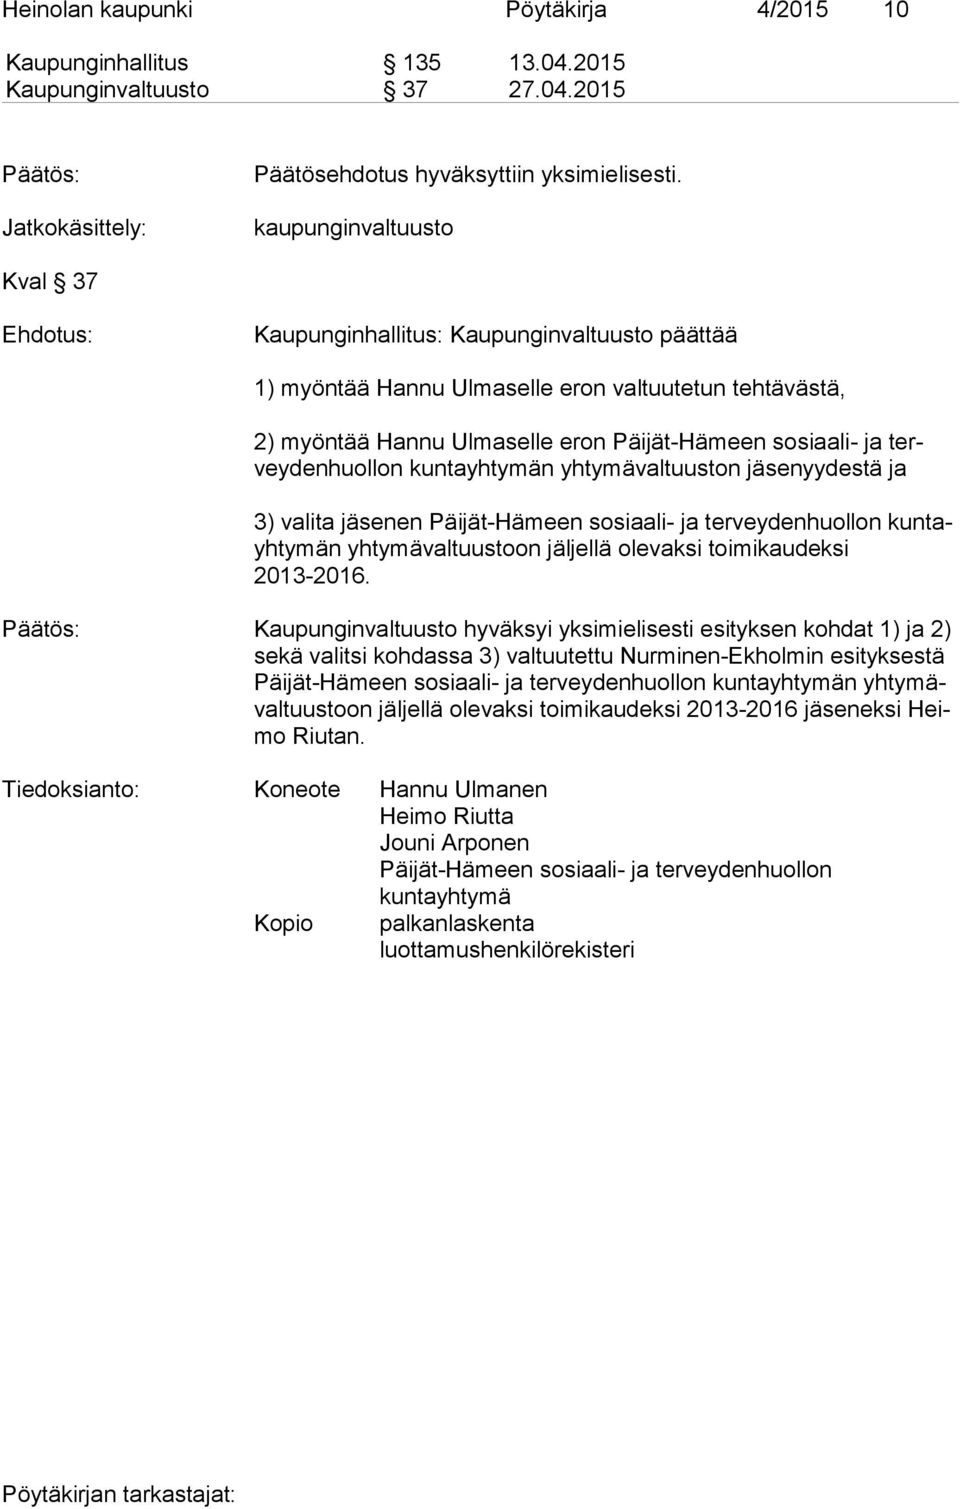 2015 Jatkokäsittely: kaupunginvaltuusto Kval 37 Kaupunginhallitus: Kaupunginvaltuusto päättää 1) myöntää Hannu Ulmaselle eron valtuutetun tehtävästä, 2) myöntää Hannu Ulmaselle eron Päijät-Hämeen